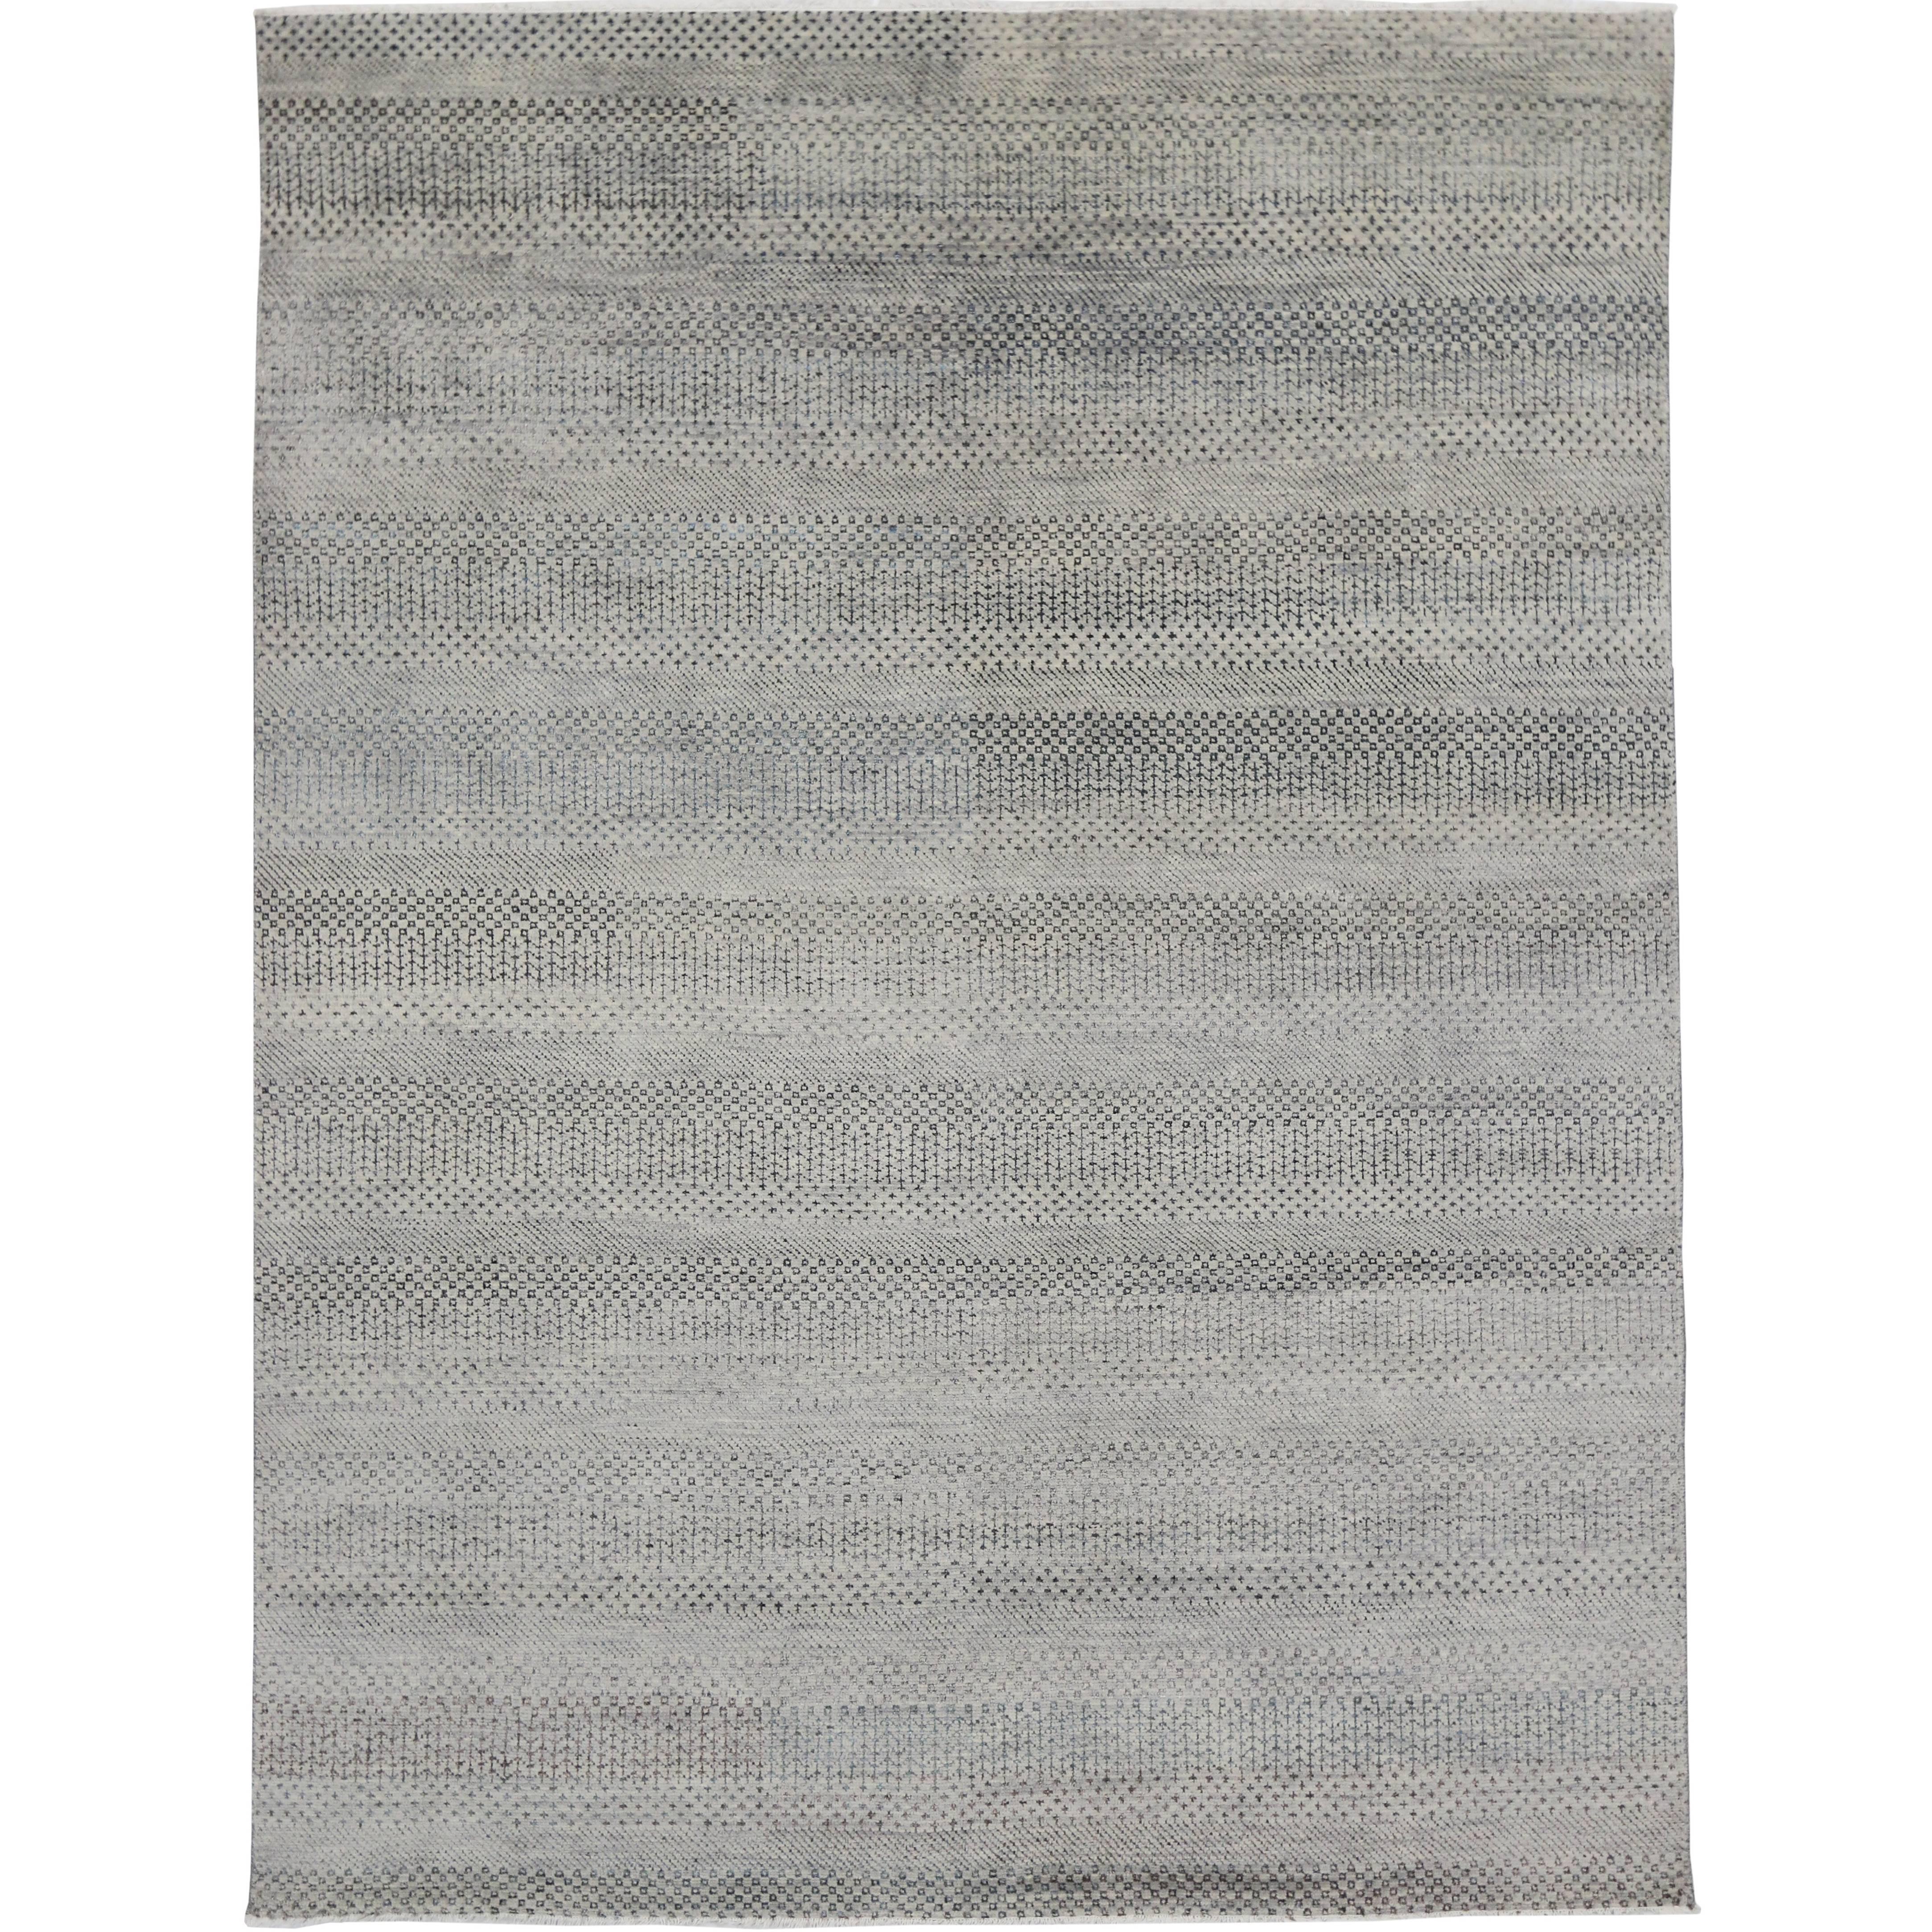 Nouveau tapis gris transitionnel de style minimaliste, design contemporain Bauhaus